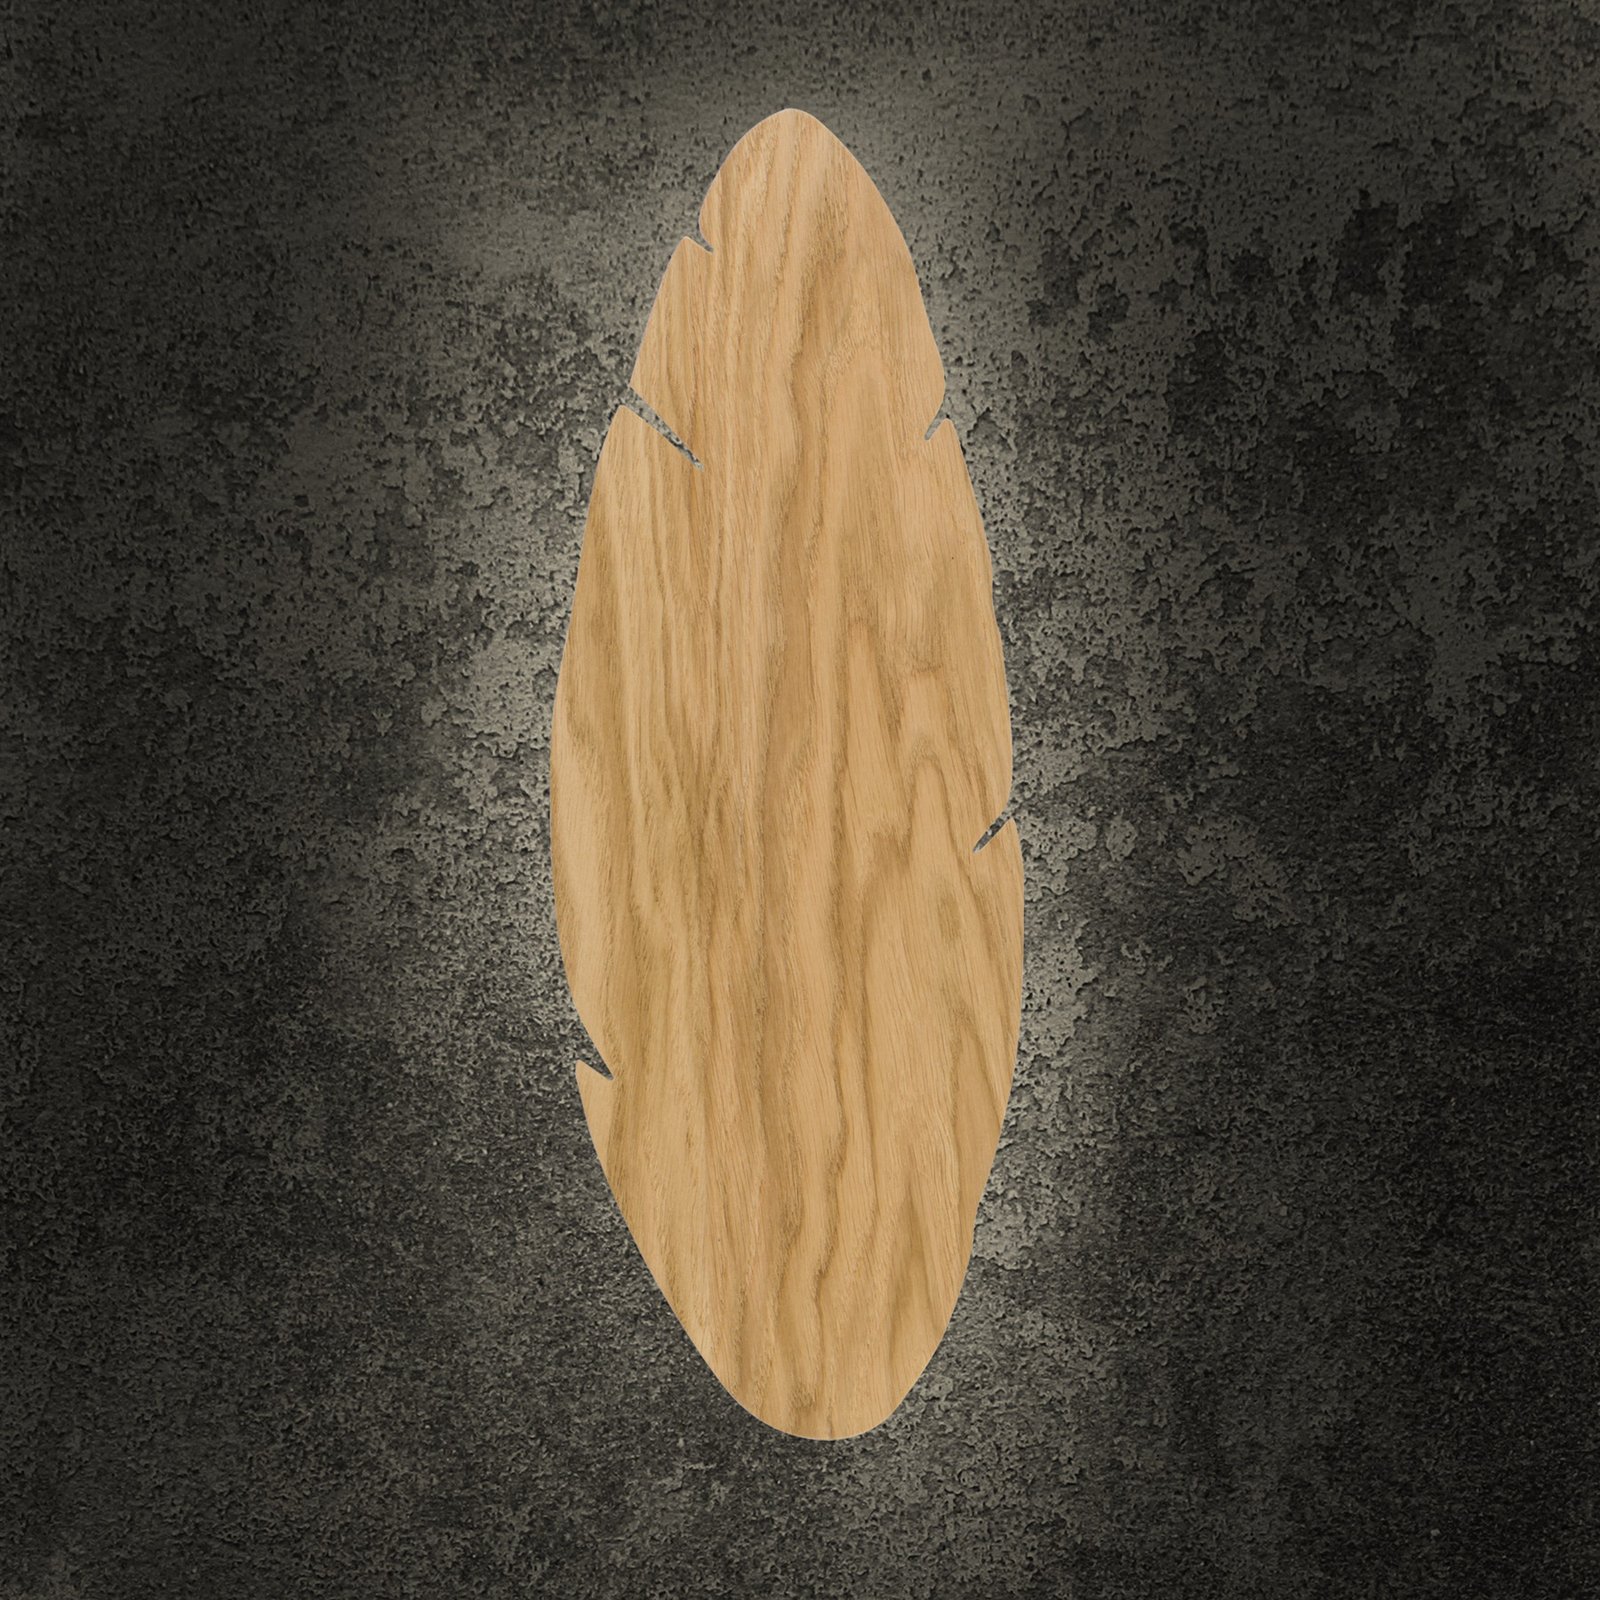 Envostar seinävalaisin Lehti, lehden muotoinen, vaaleaa puuta, 51 x 18 cm